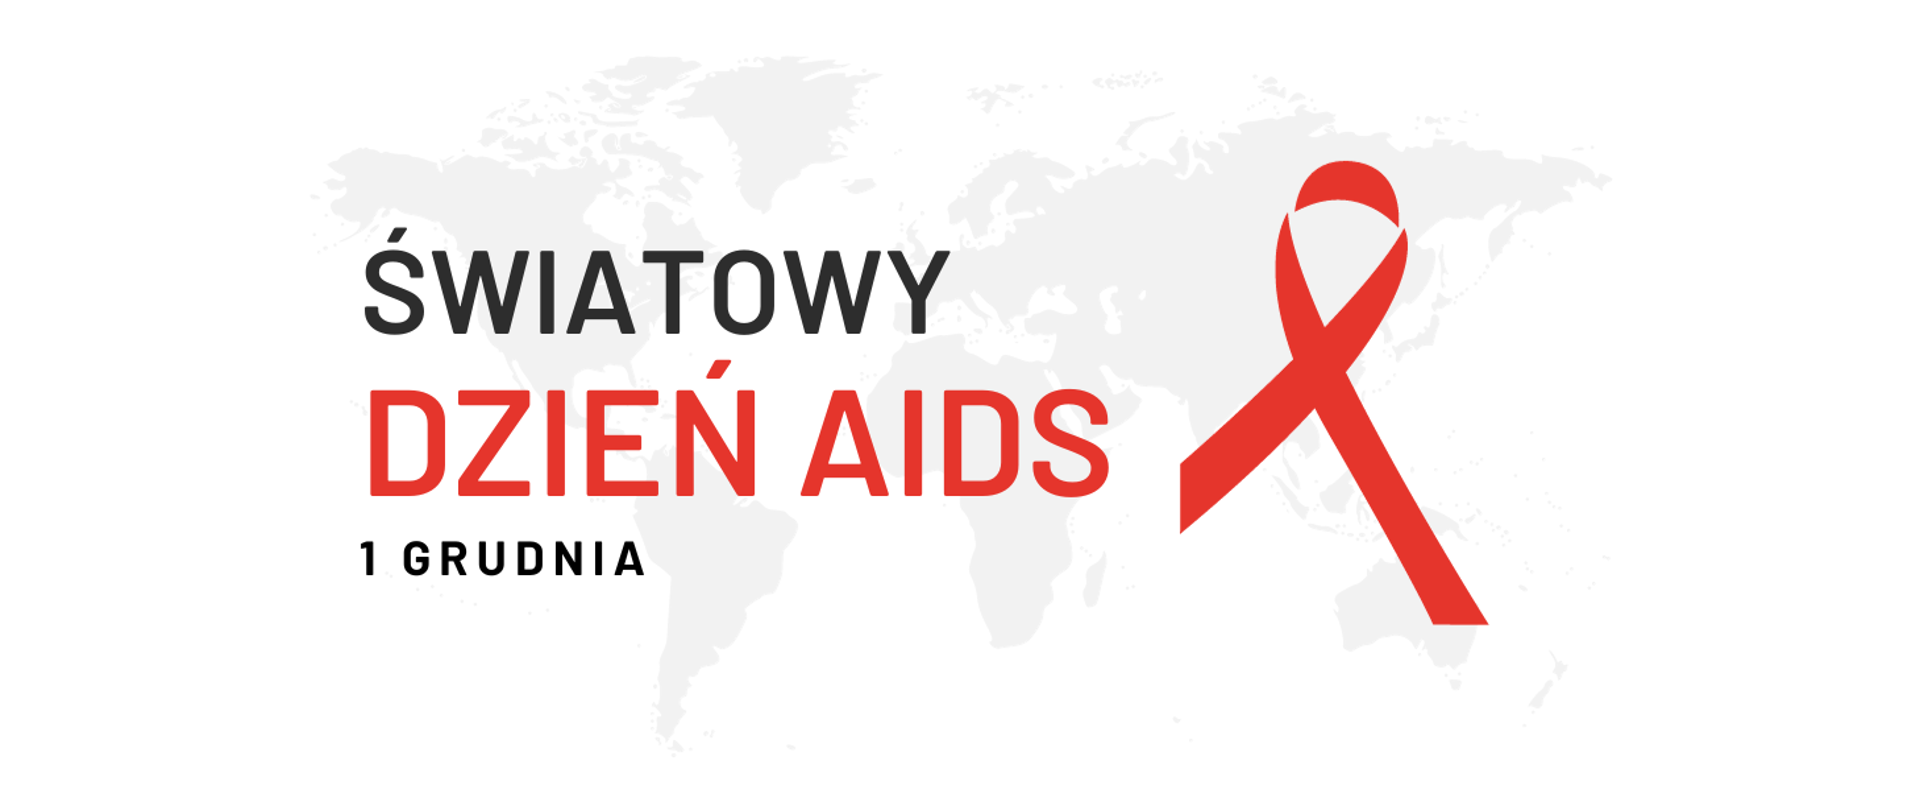 Na białym tle delikatny szary zaraz mapy świata na którym znajduje się napis "Światowy Dzień AIDS - 1 grudnia". Po prawej stronie napisu czerwona kokardka, która jest symbolem solidarności z osobami żyjącymi z HIV i AIDS.